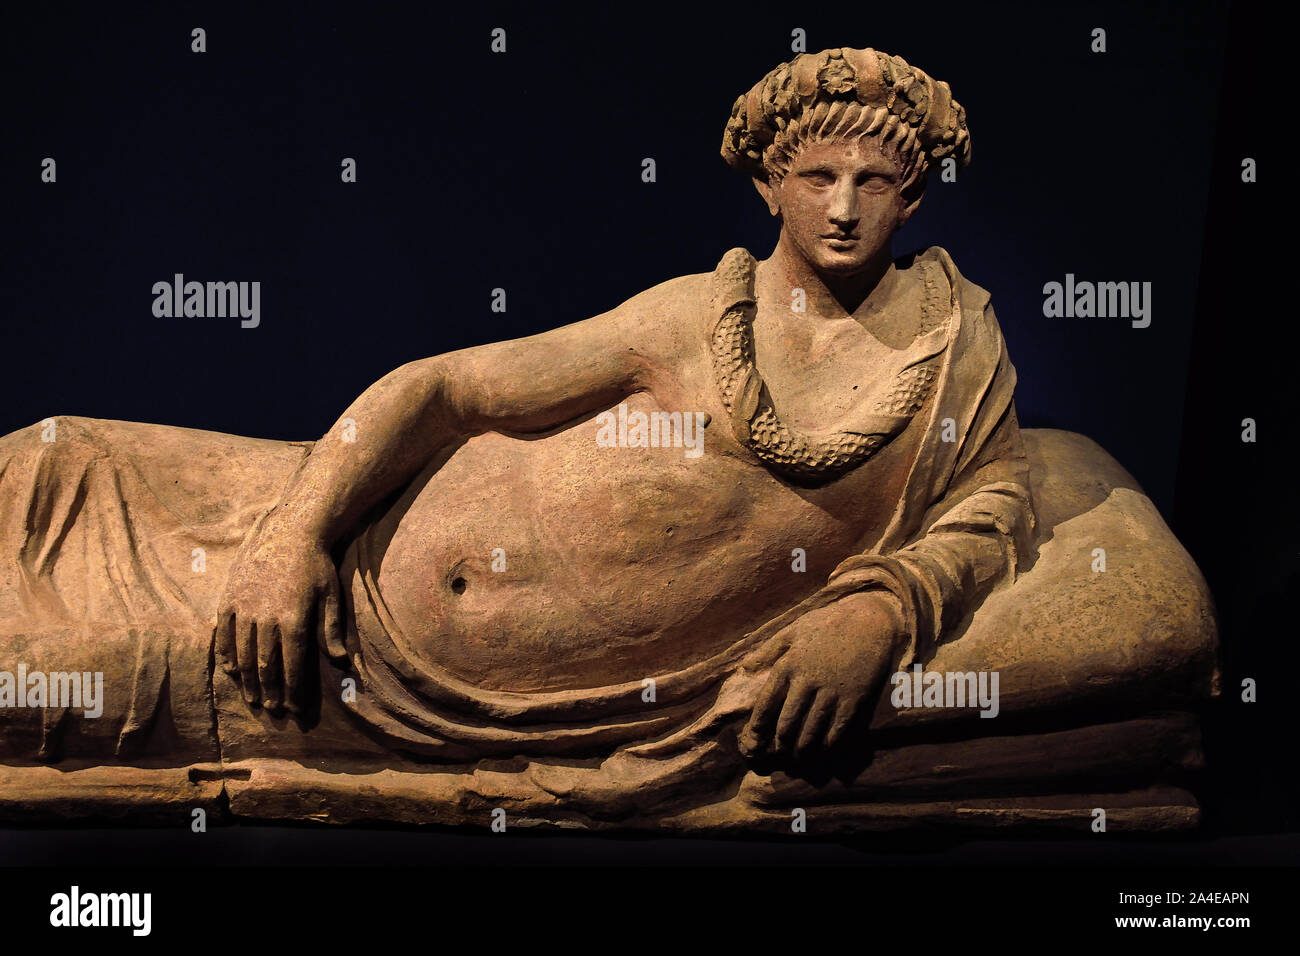 Coperchio di sarcofago: semi-extended figura maschile cotto 168 cm, metà del terzo secolo A.C. AD. Toscana, etrusca, Etruria, Italia . Foto Stock